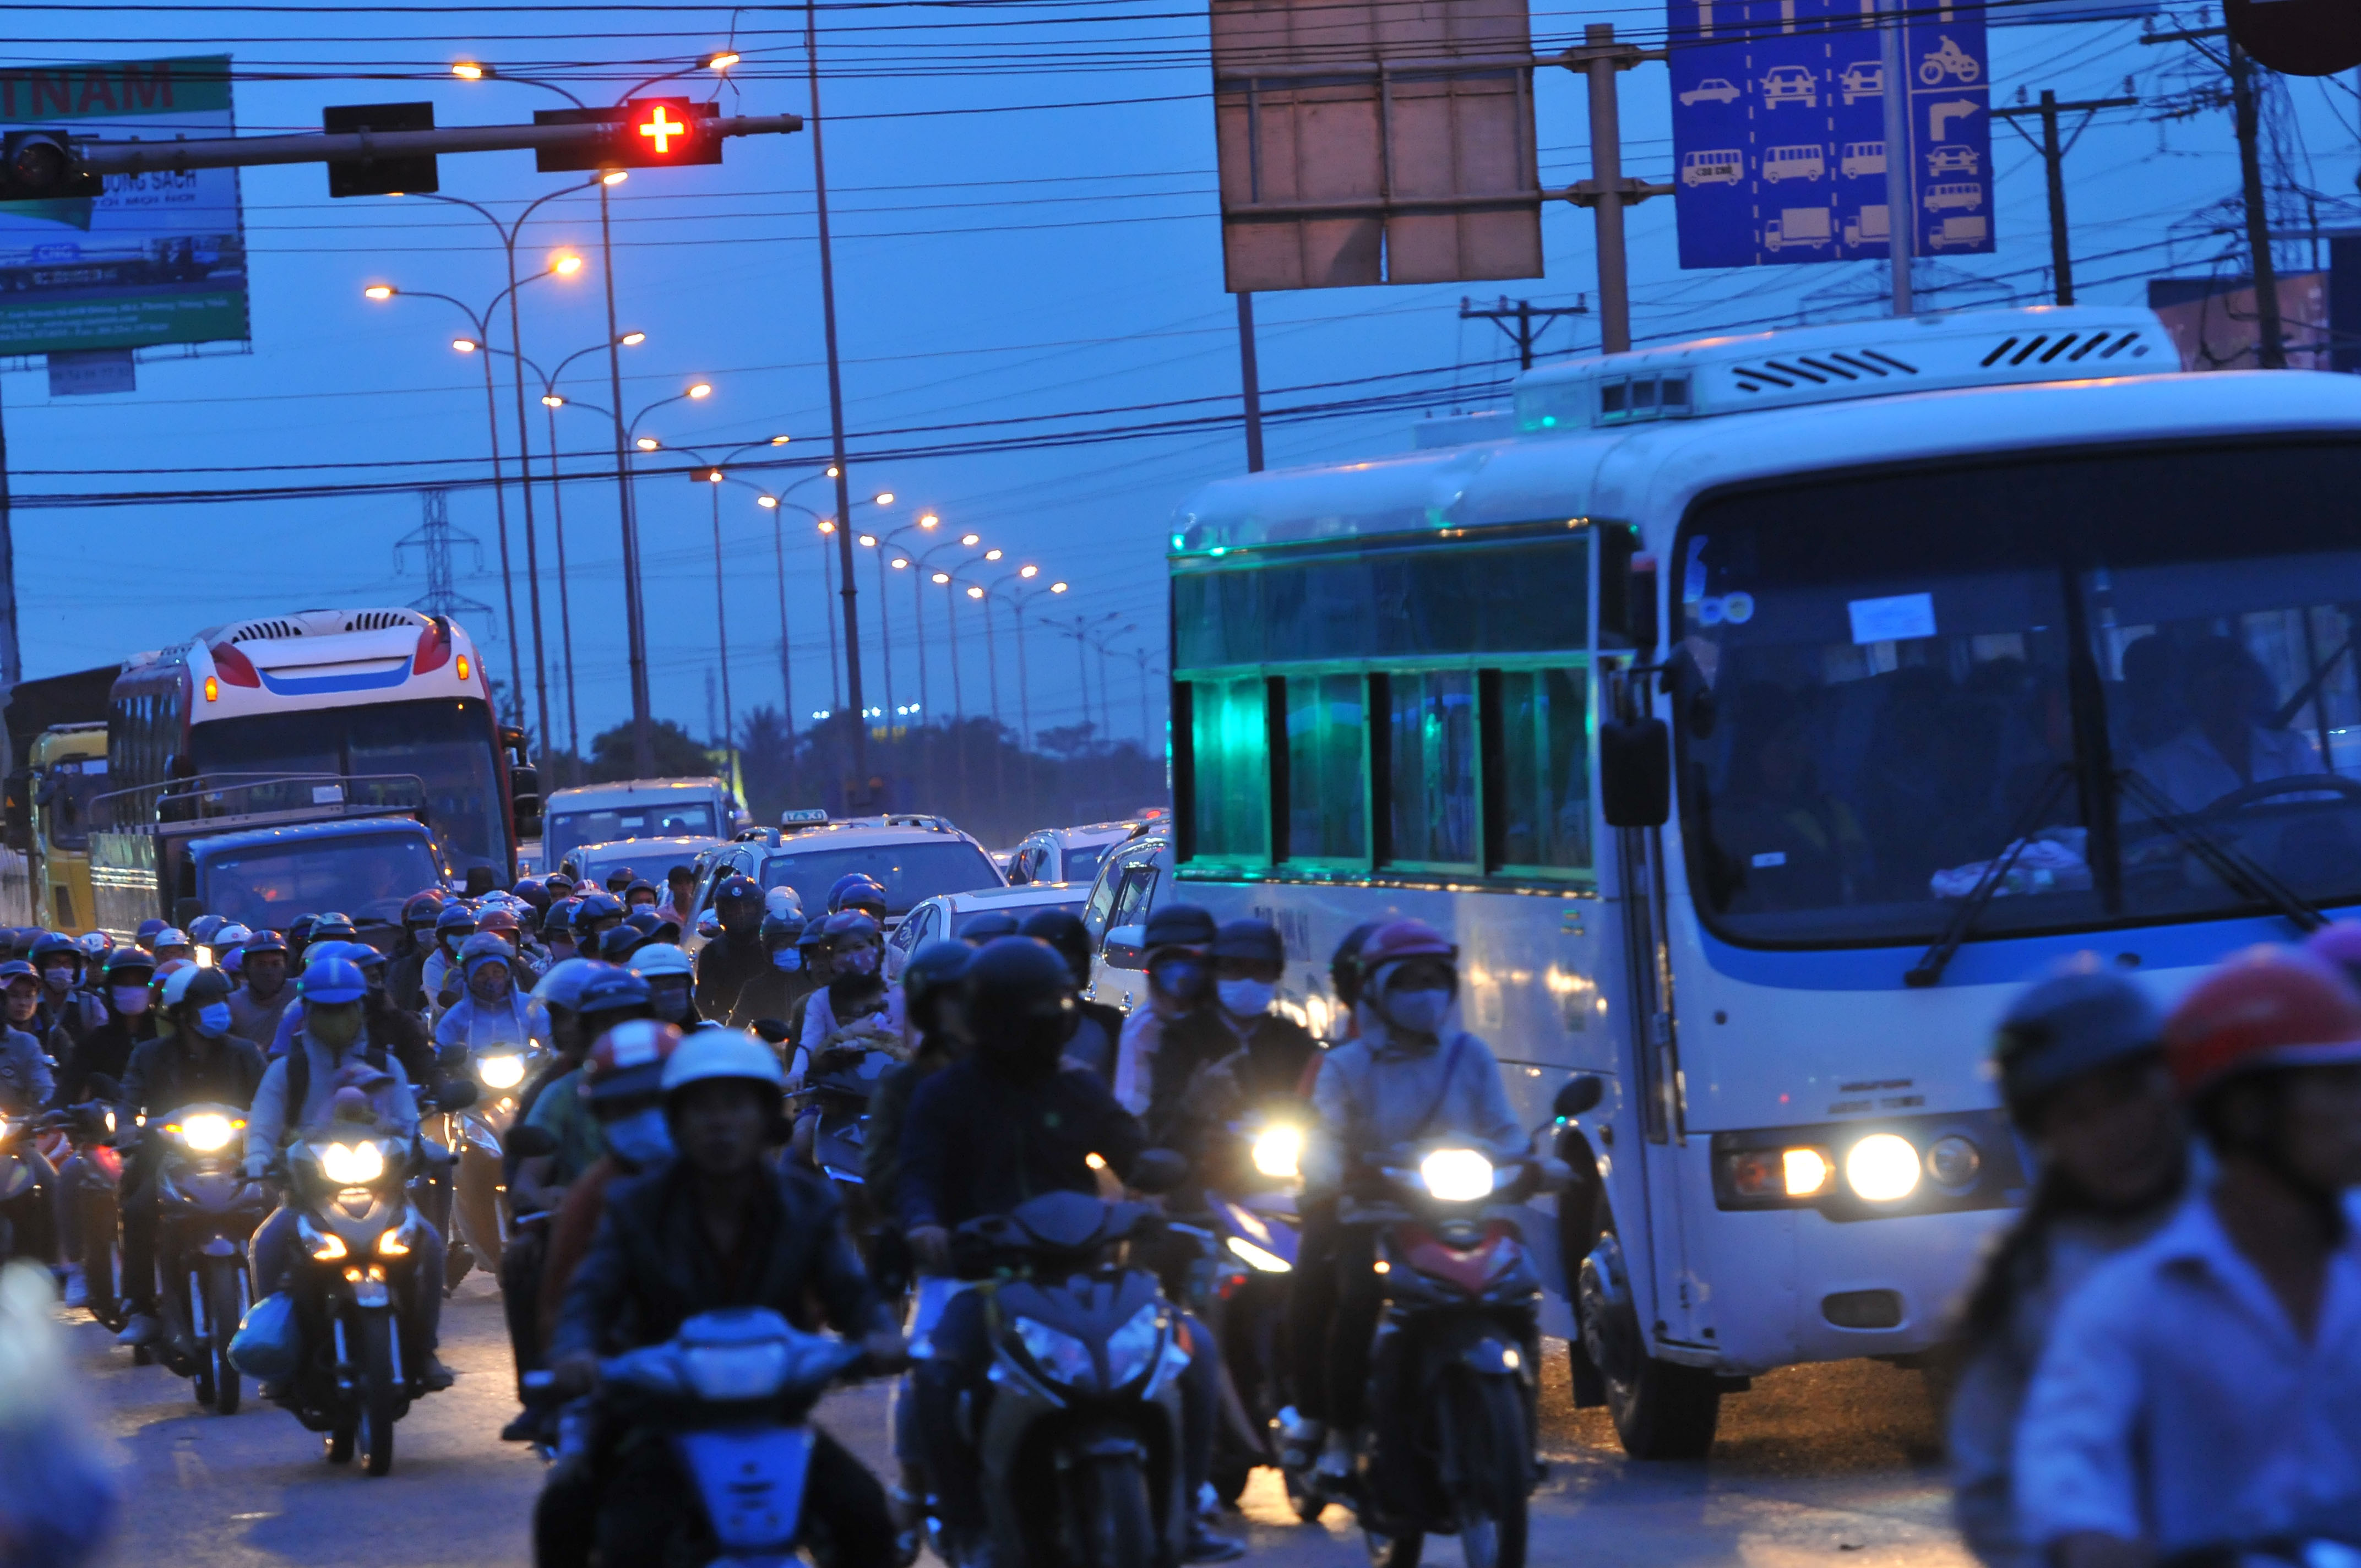 Quốc lộ 51 đoạn qua huyện Long Thành xe cộ đông đúc từ thời điểm sau 18 giờ.